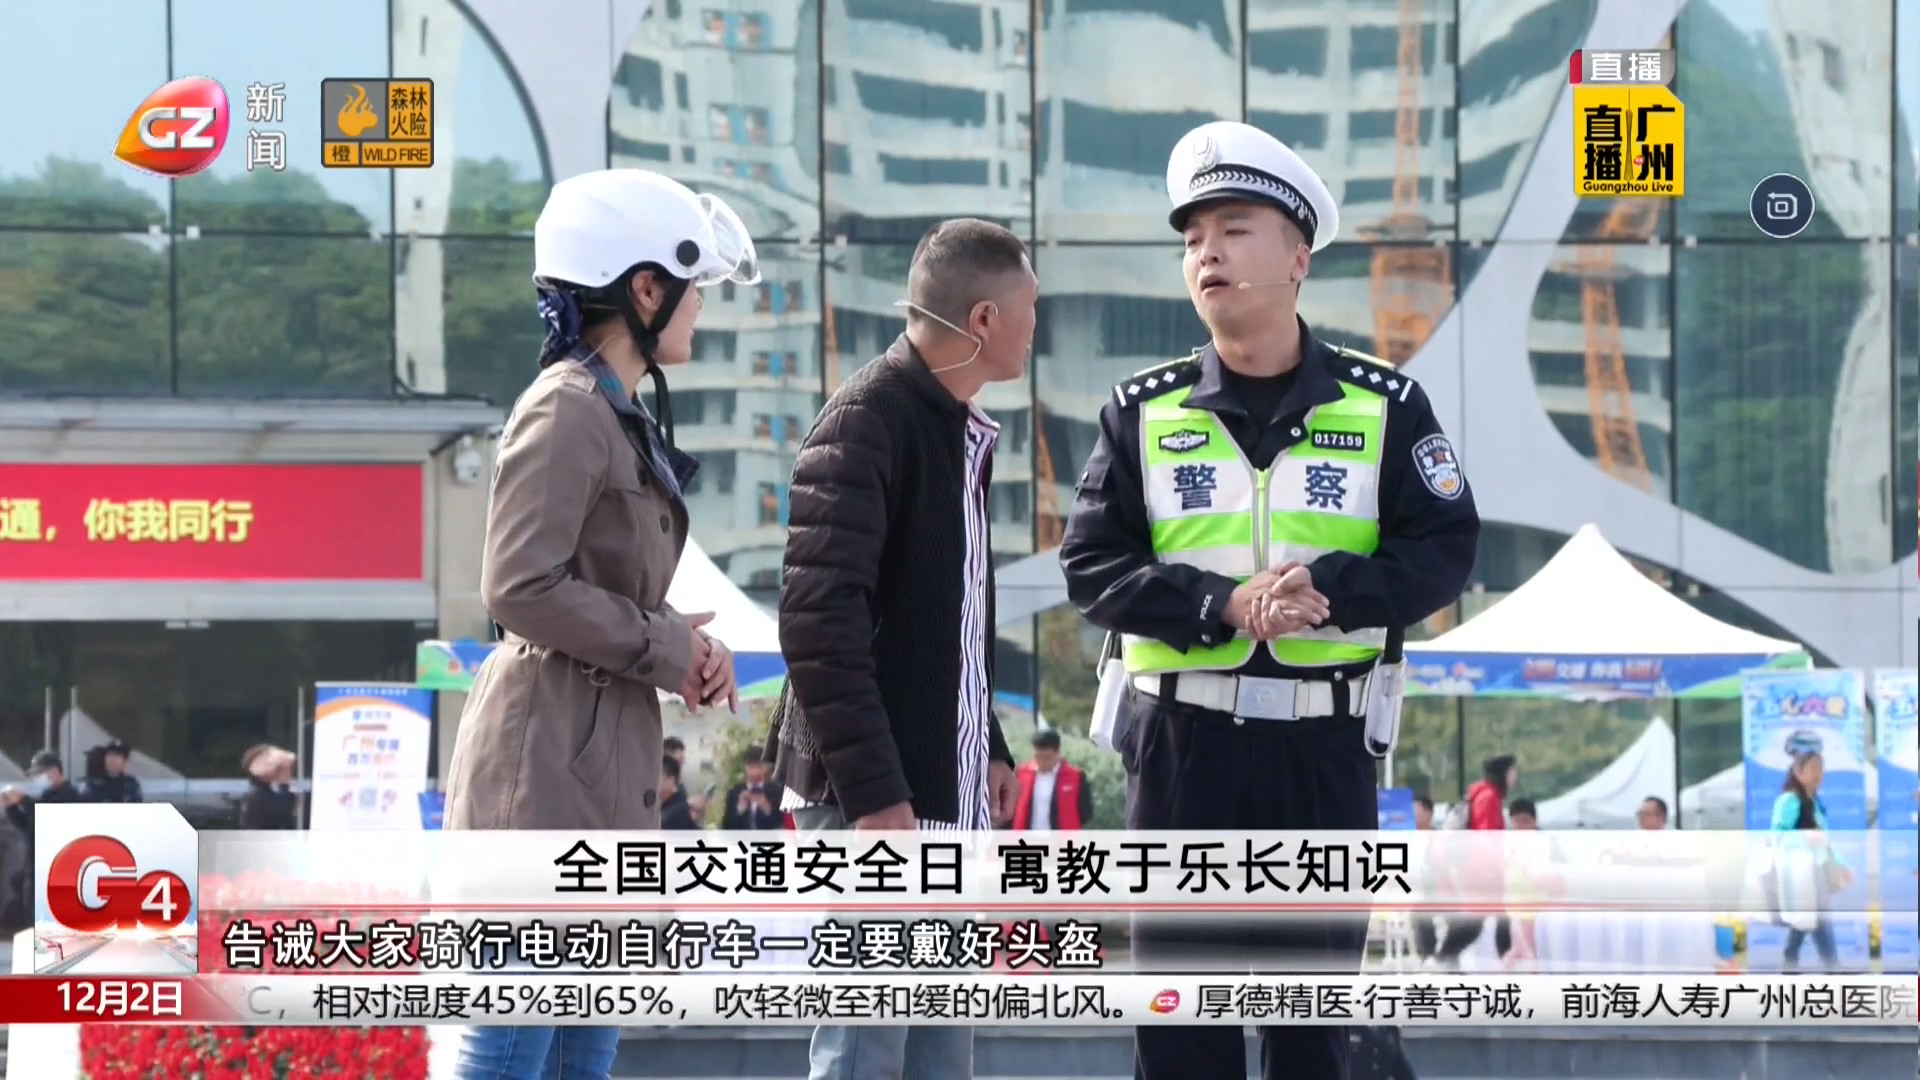 广州台新闻频道 G4出动 全国交通安全日 寓教于乐长知识